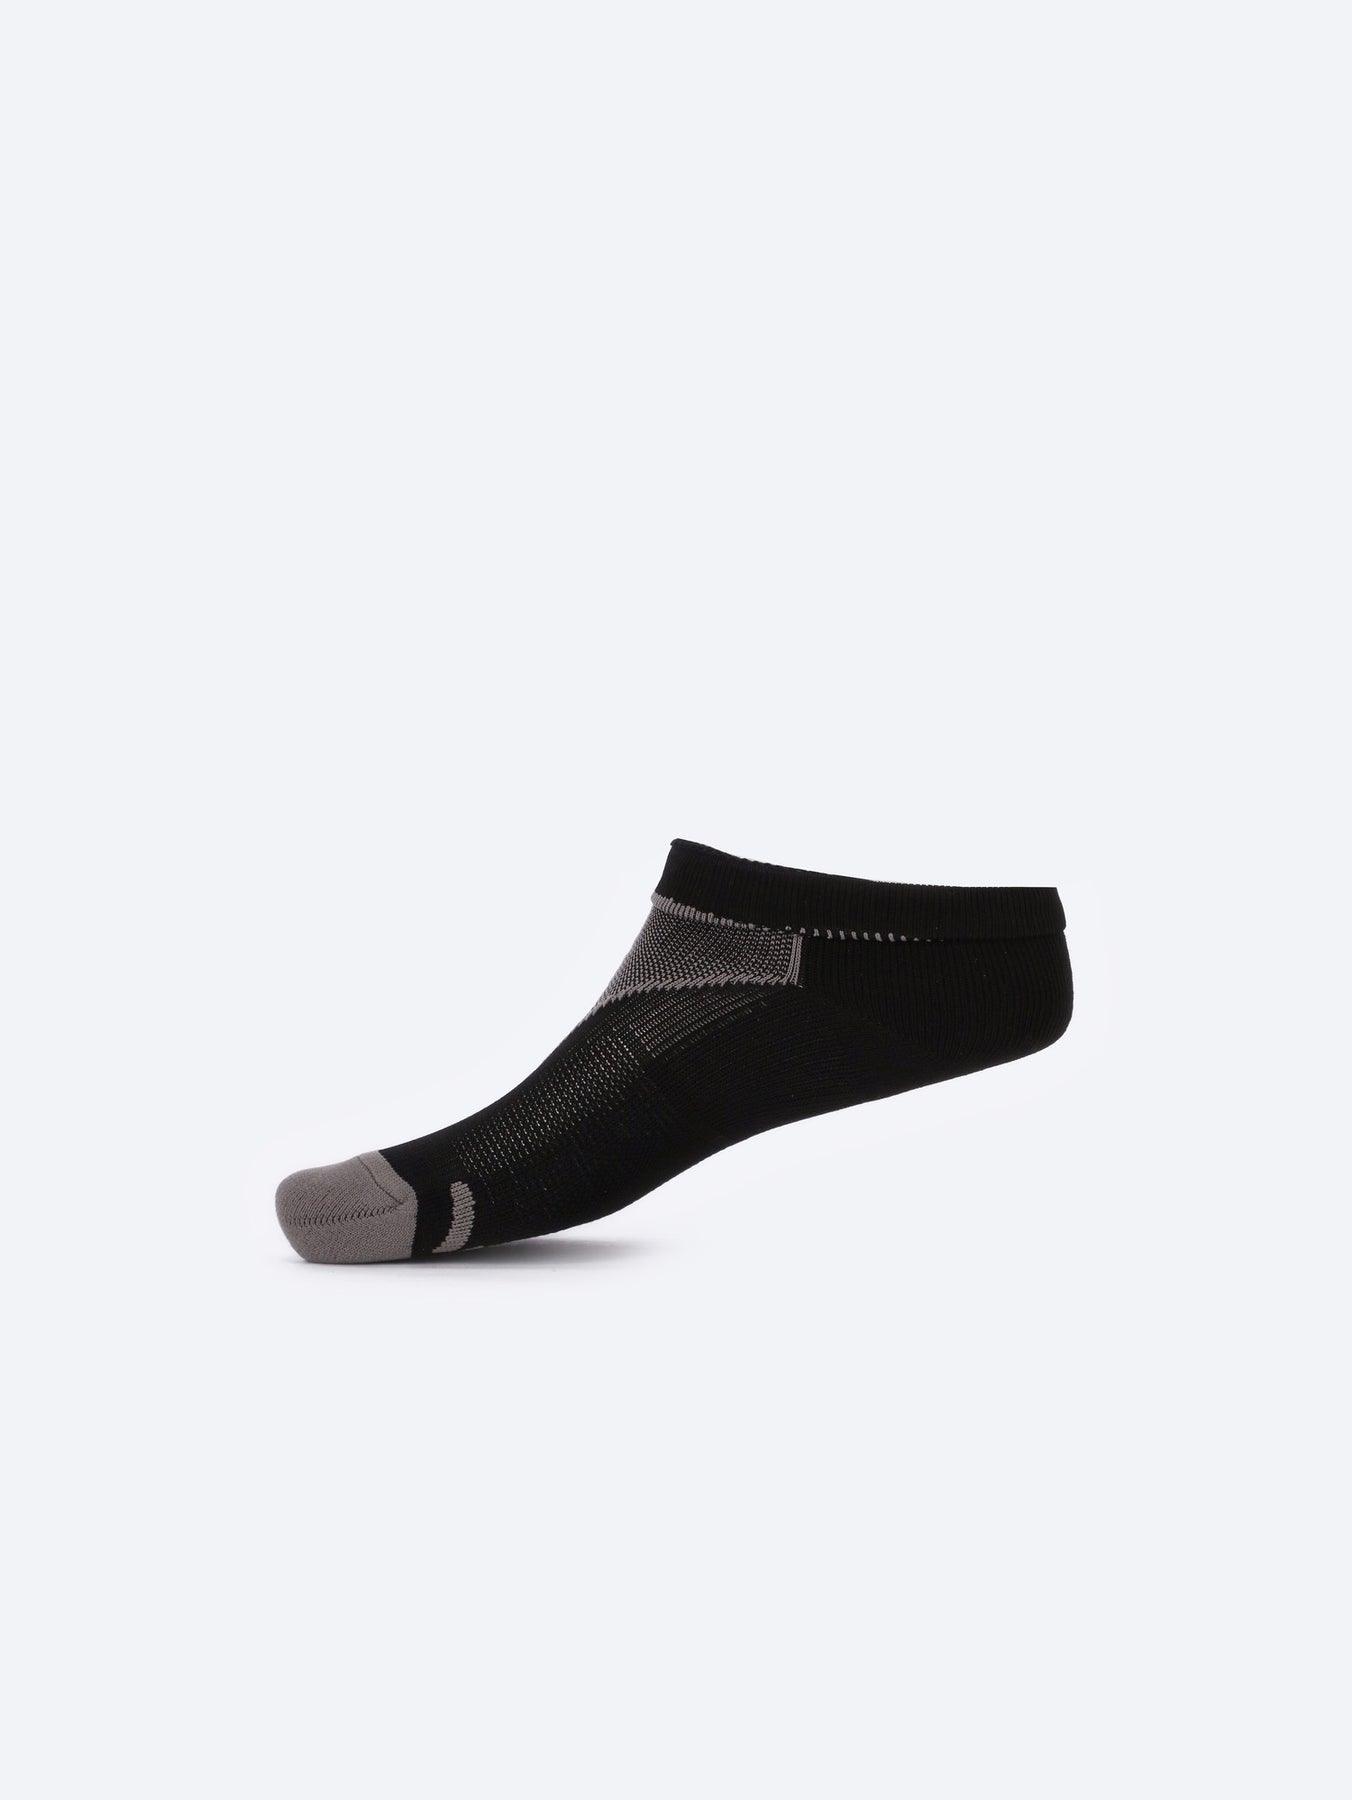 Photo by ð—”ð—§ð—¨ð— SPORTSWEAR Â® on December 26, 2022. May be of gray/black low-cut kid's socks with atum logo